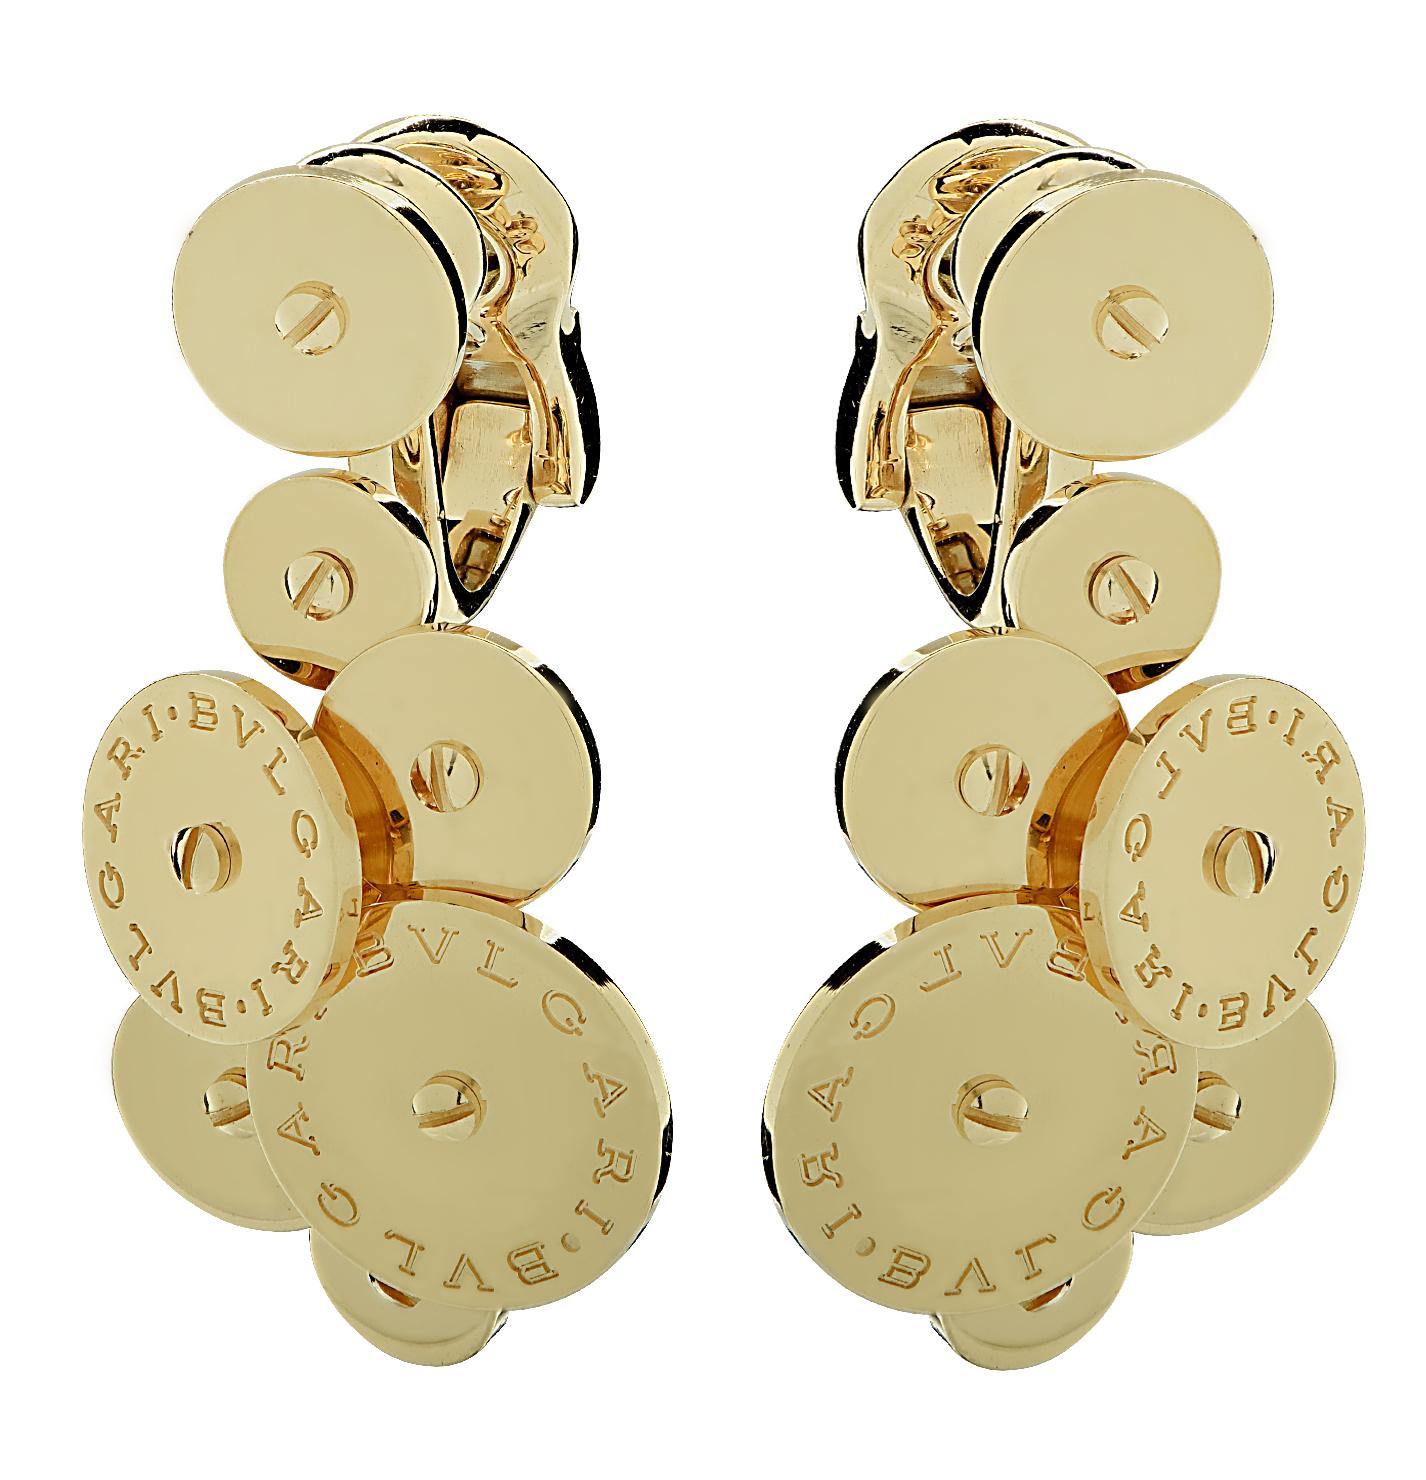 Die atemberaubenden Bvlgari Cicladi-Ohrringe vereinen Eleganz mit modernem Design. Er ist aus 18 Karat Gelbgold gefertigt und zeigt goldene Scheiben, die zu einem goldenen Strauß geformt sind. Dieses wunderschöne Paar wiegt insgesamt 22,3 Gramm.